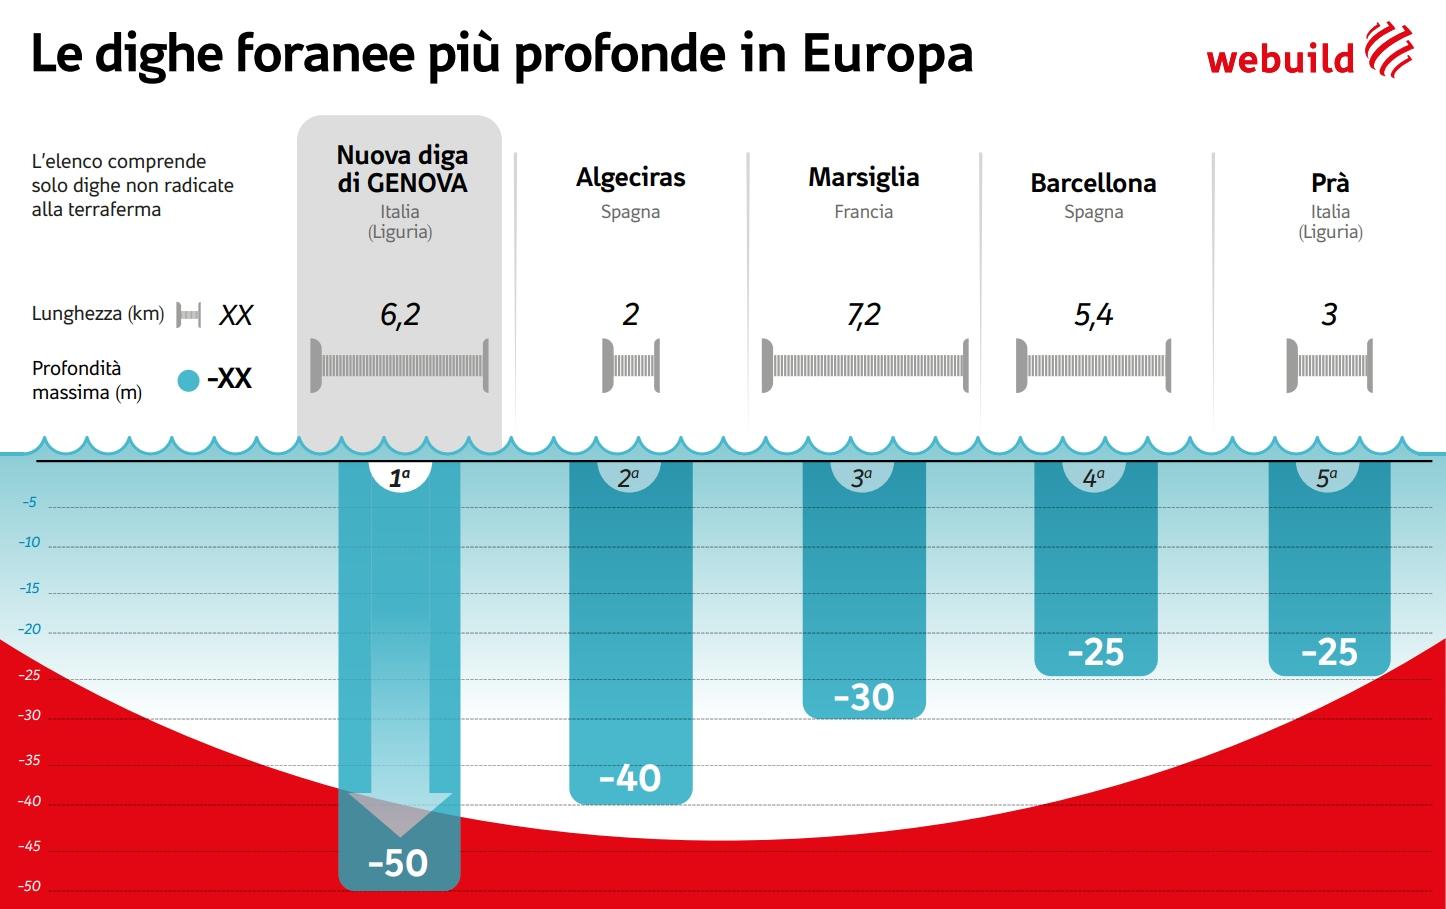 Le dighe foranee più profonde in Europa, infografica 